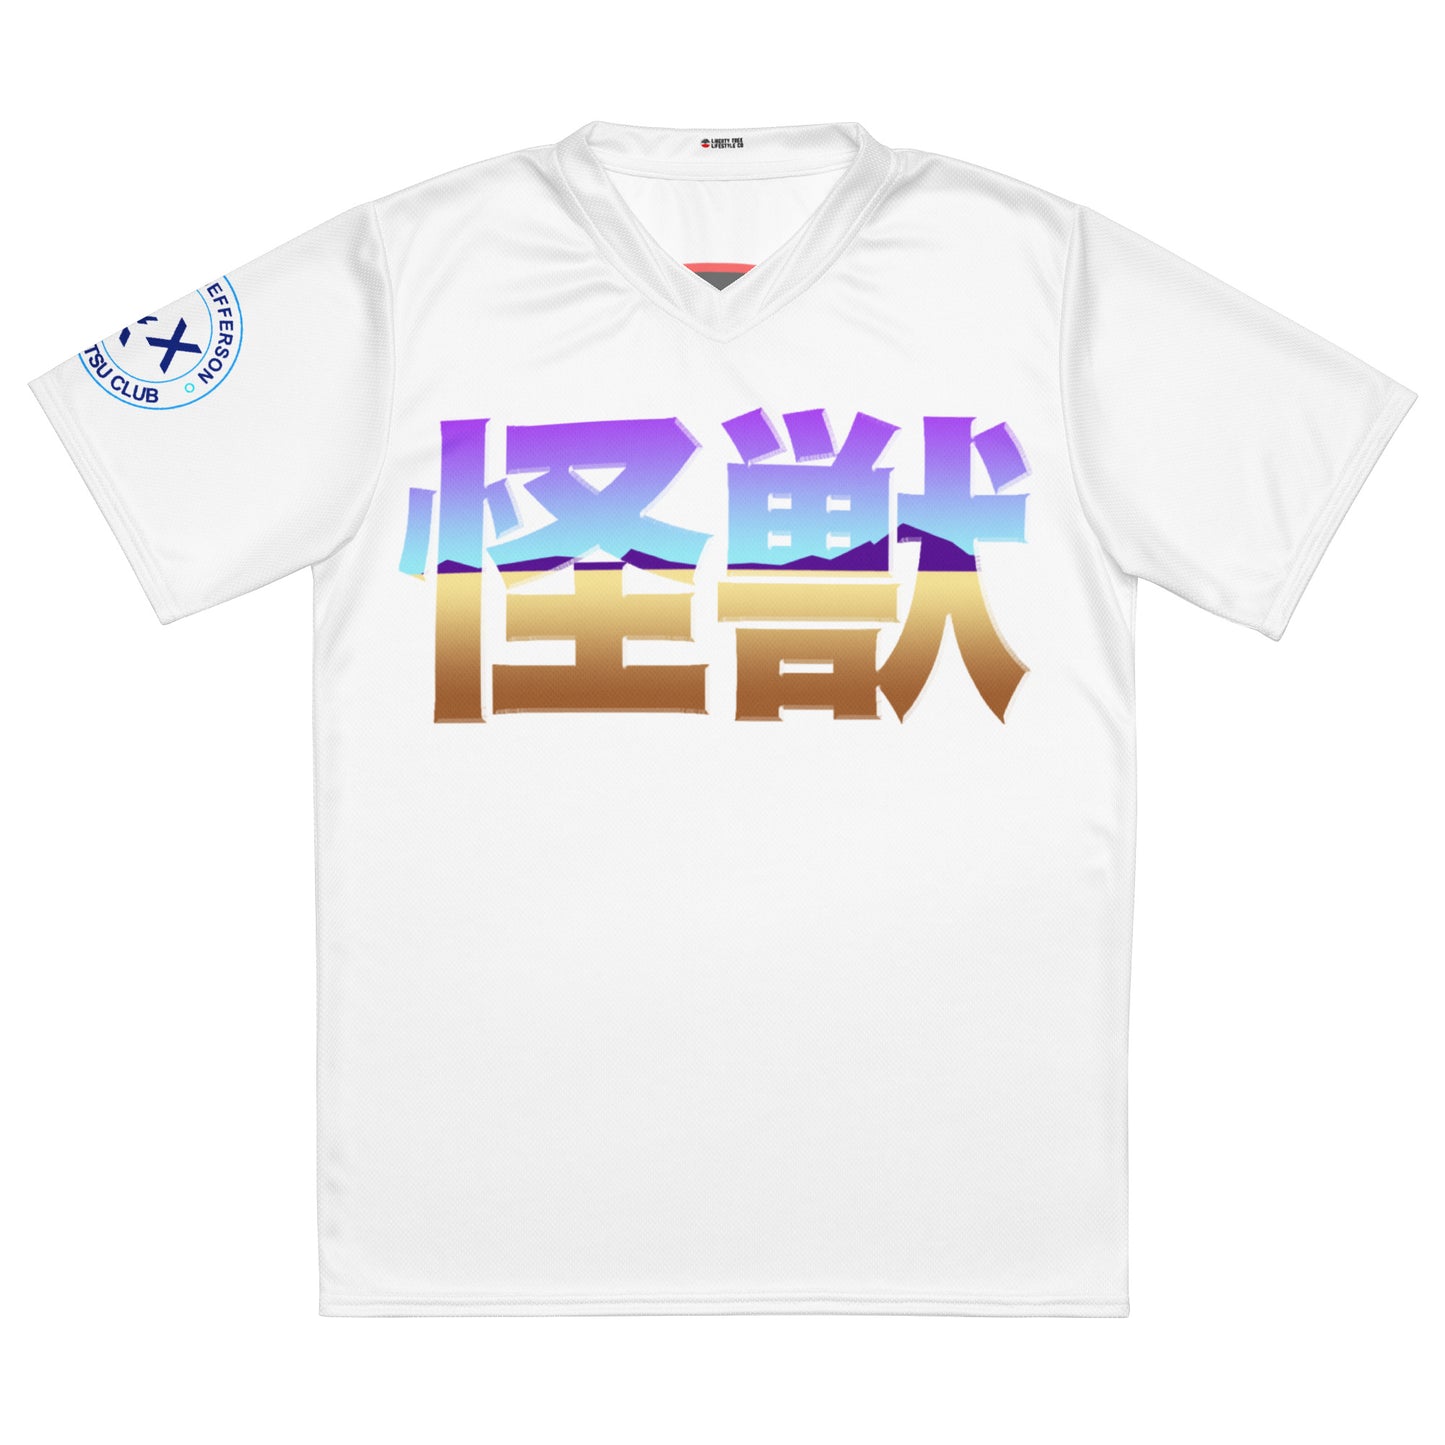 White Kaiju Training Shirt